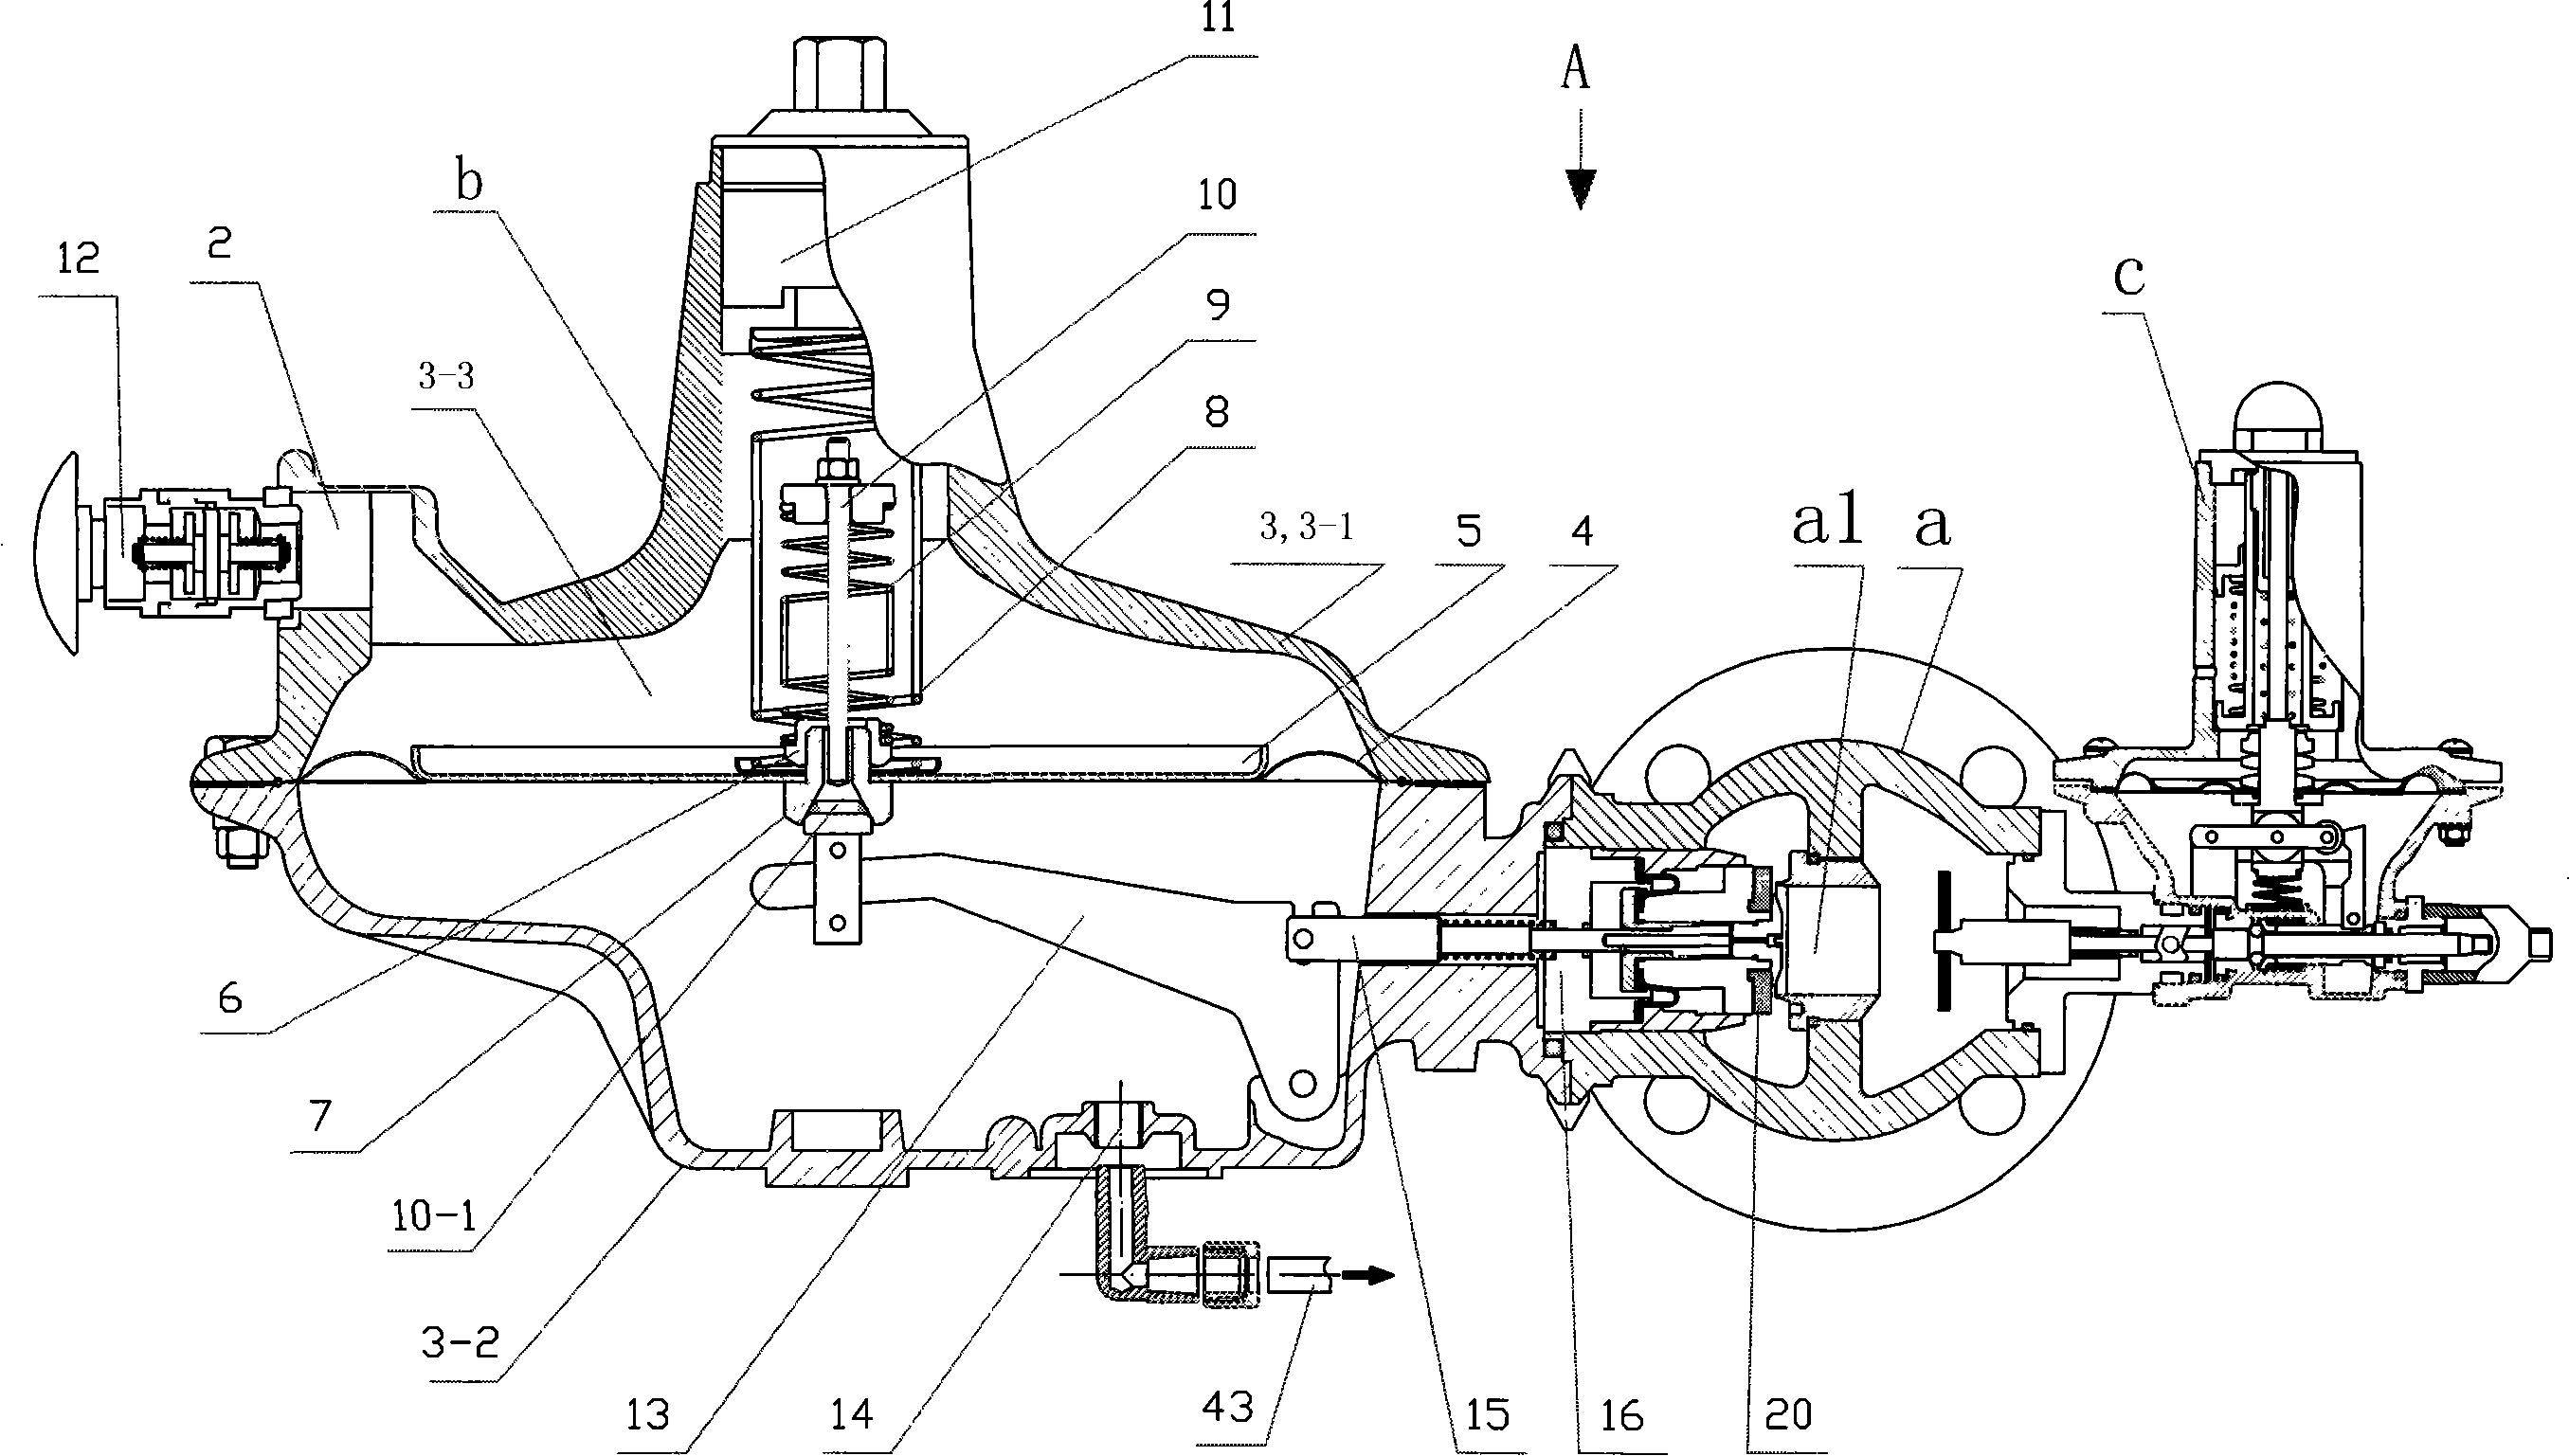 燃气调压箱结构图图片